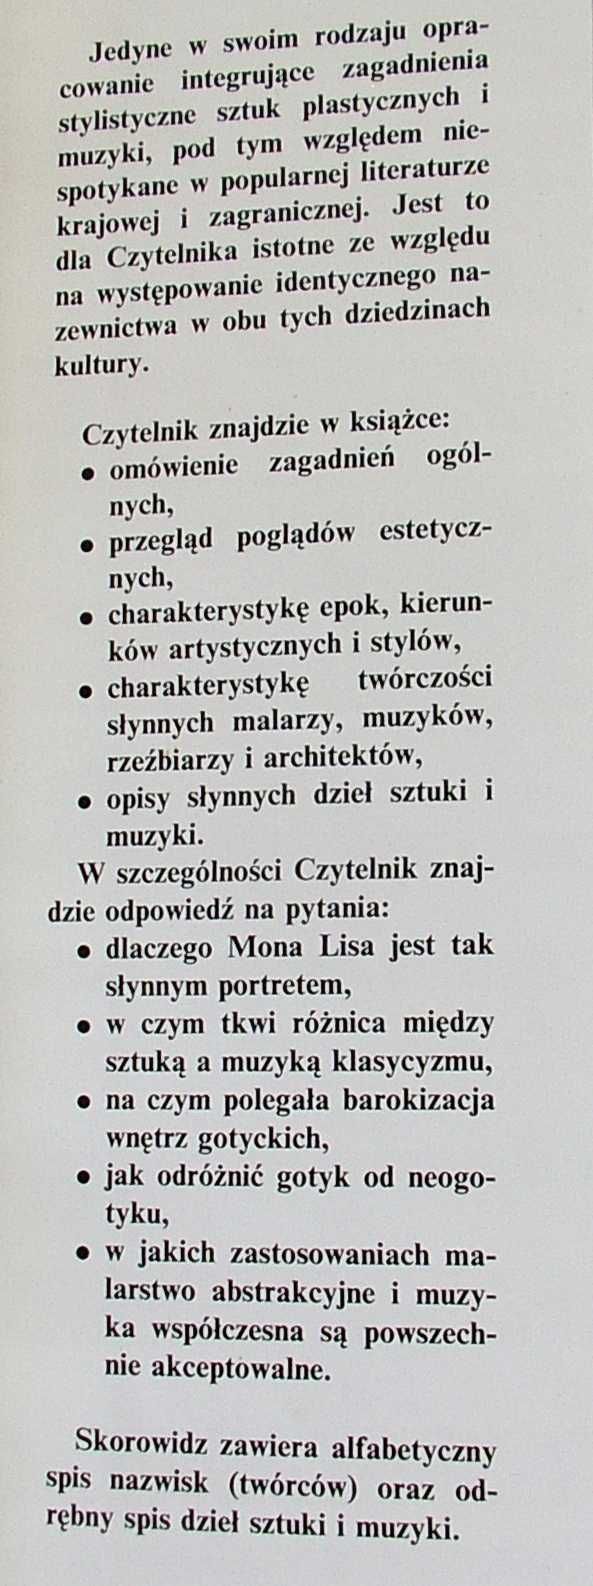 DZIEŁA STYLE EPOKI - Jerzy Wrotkowski